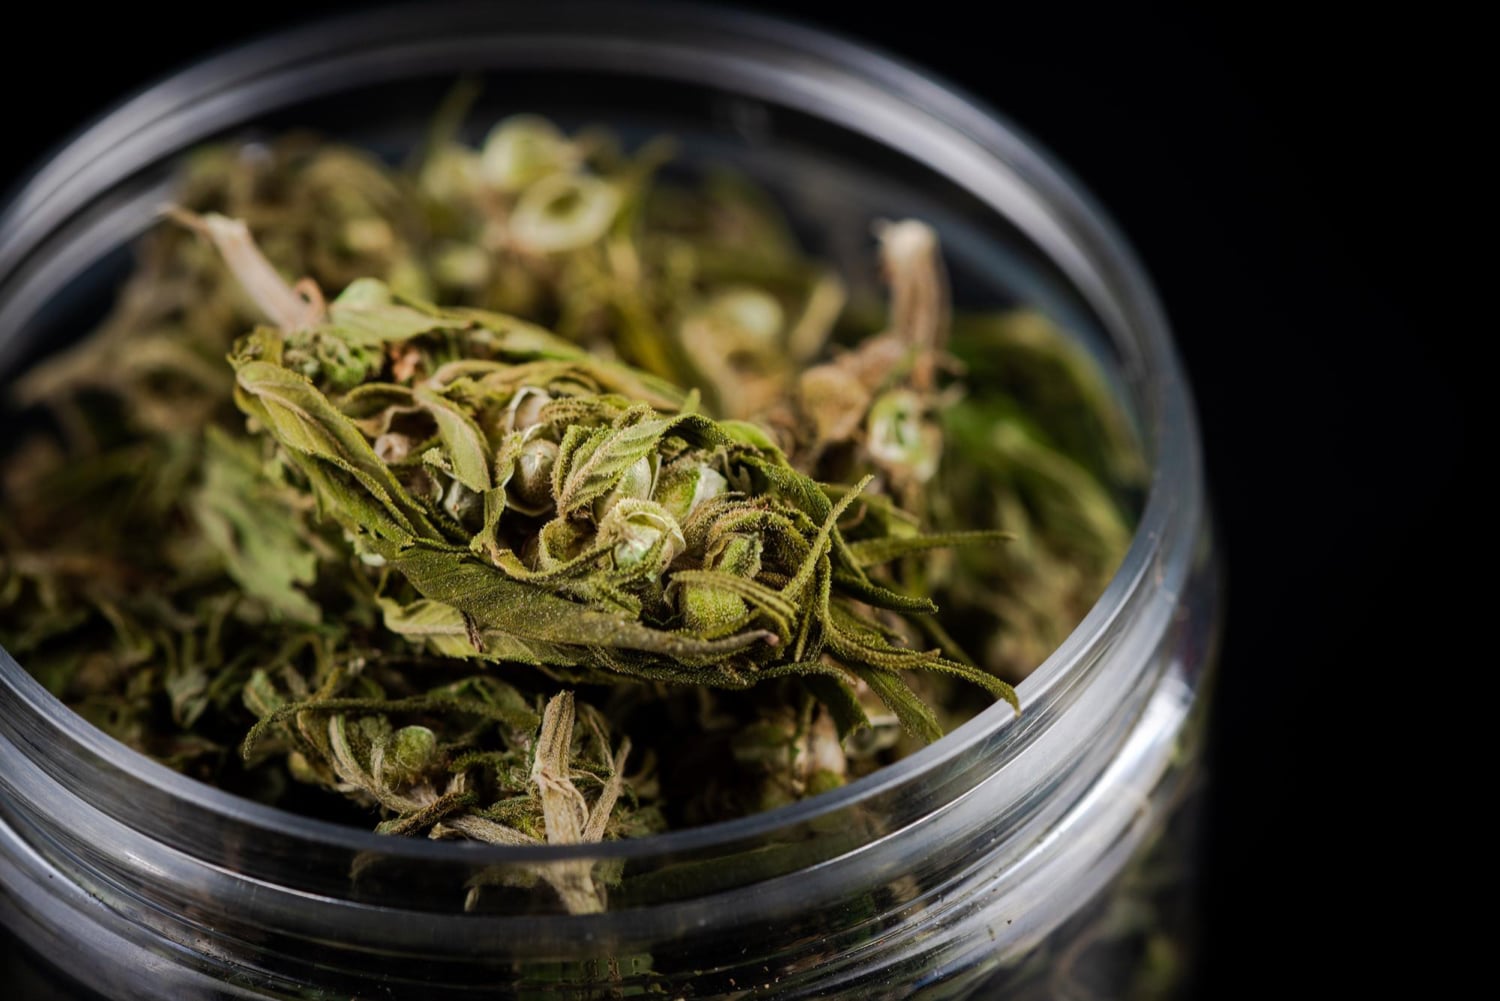 “De por sí, ya casi todo el mundo consume marihuana”, dice ministro de Seguridad por proyecto de ley para legalizar esta droga